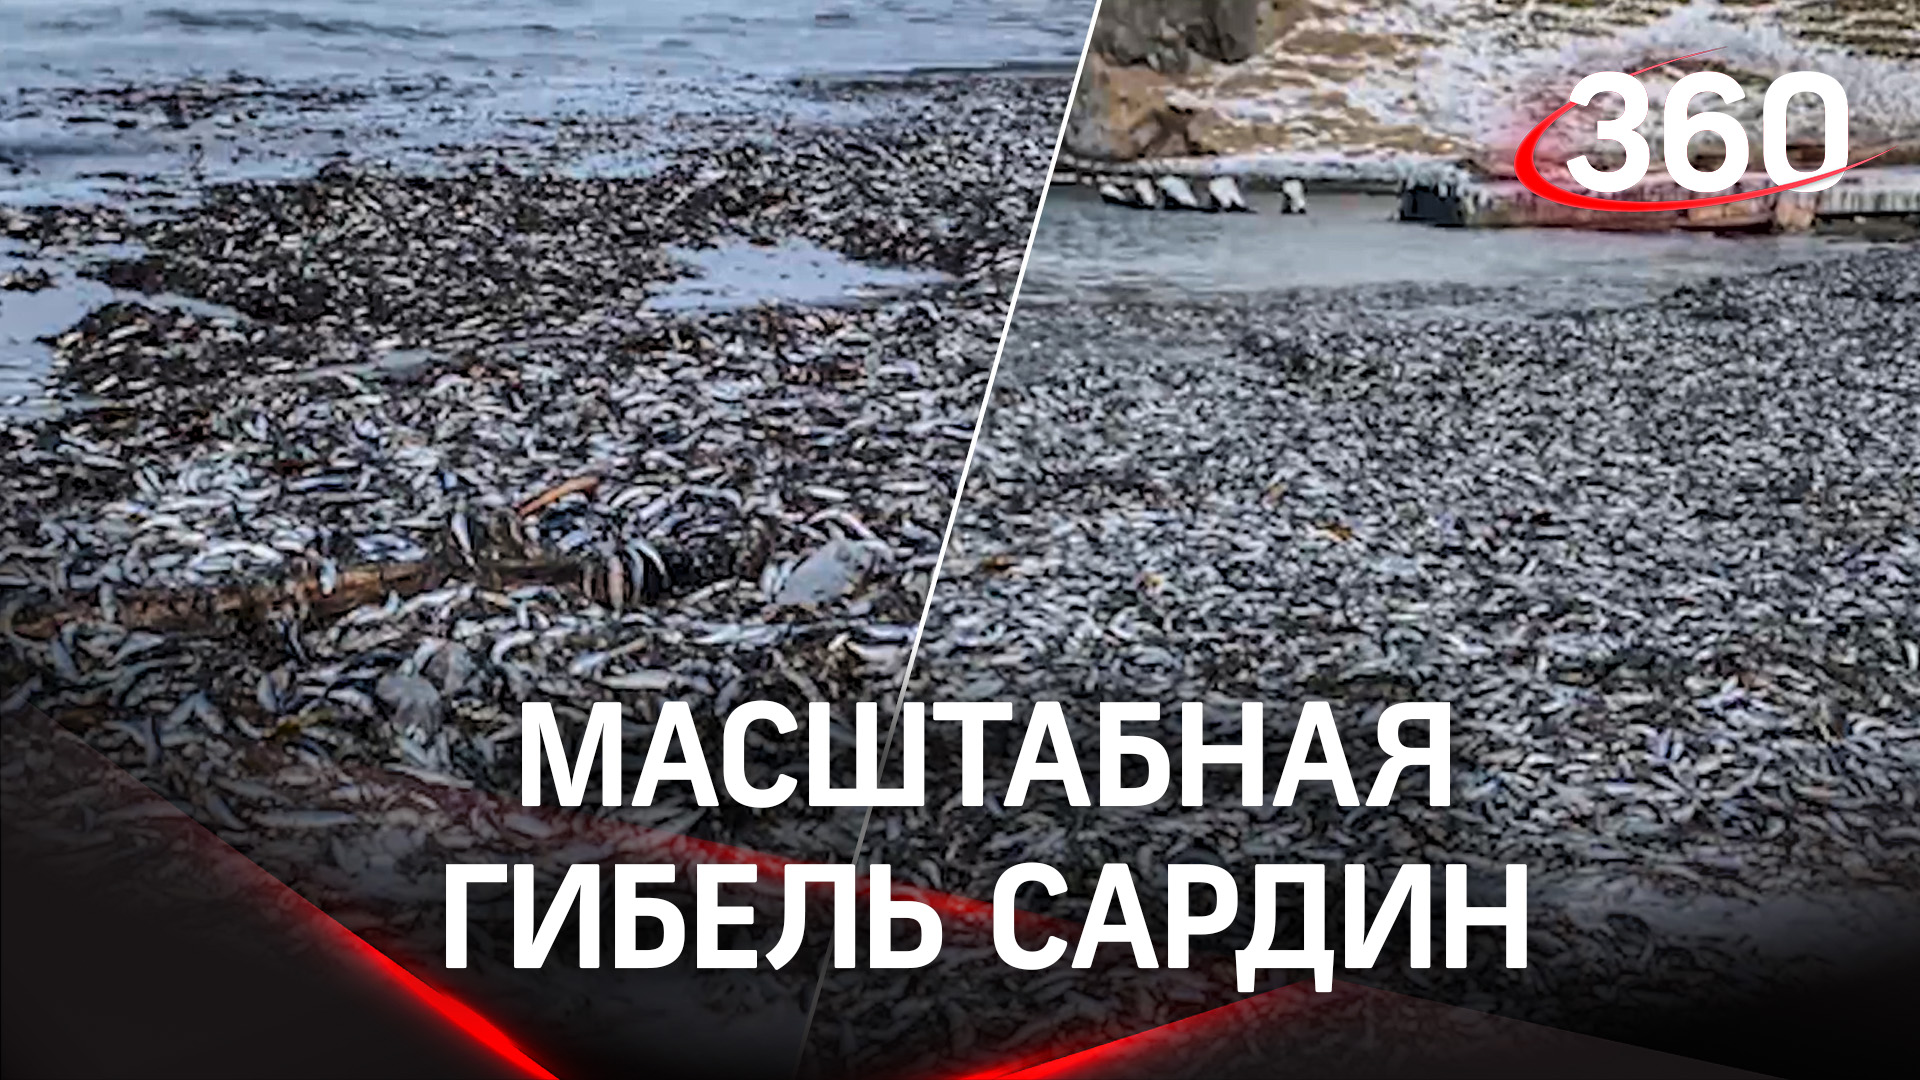 Тысячи мёртвых сардин выбросило на берег острова Кунашир